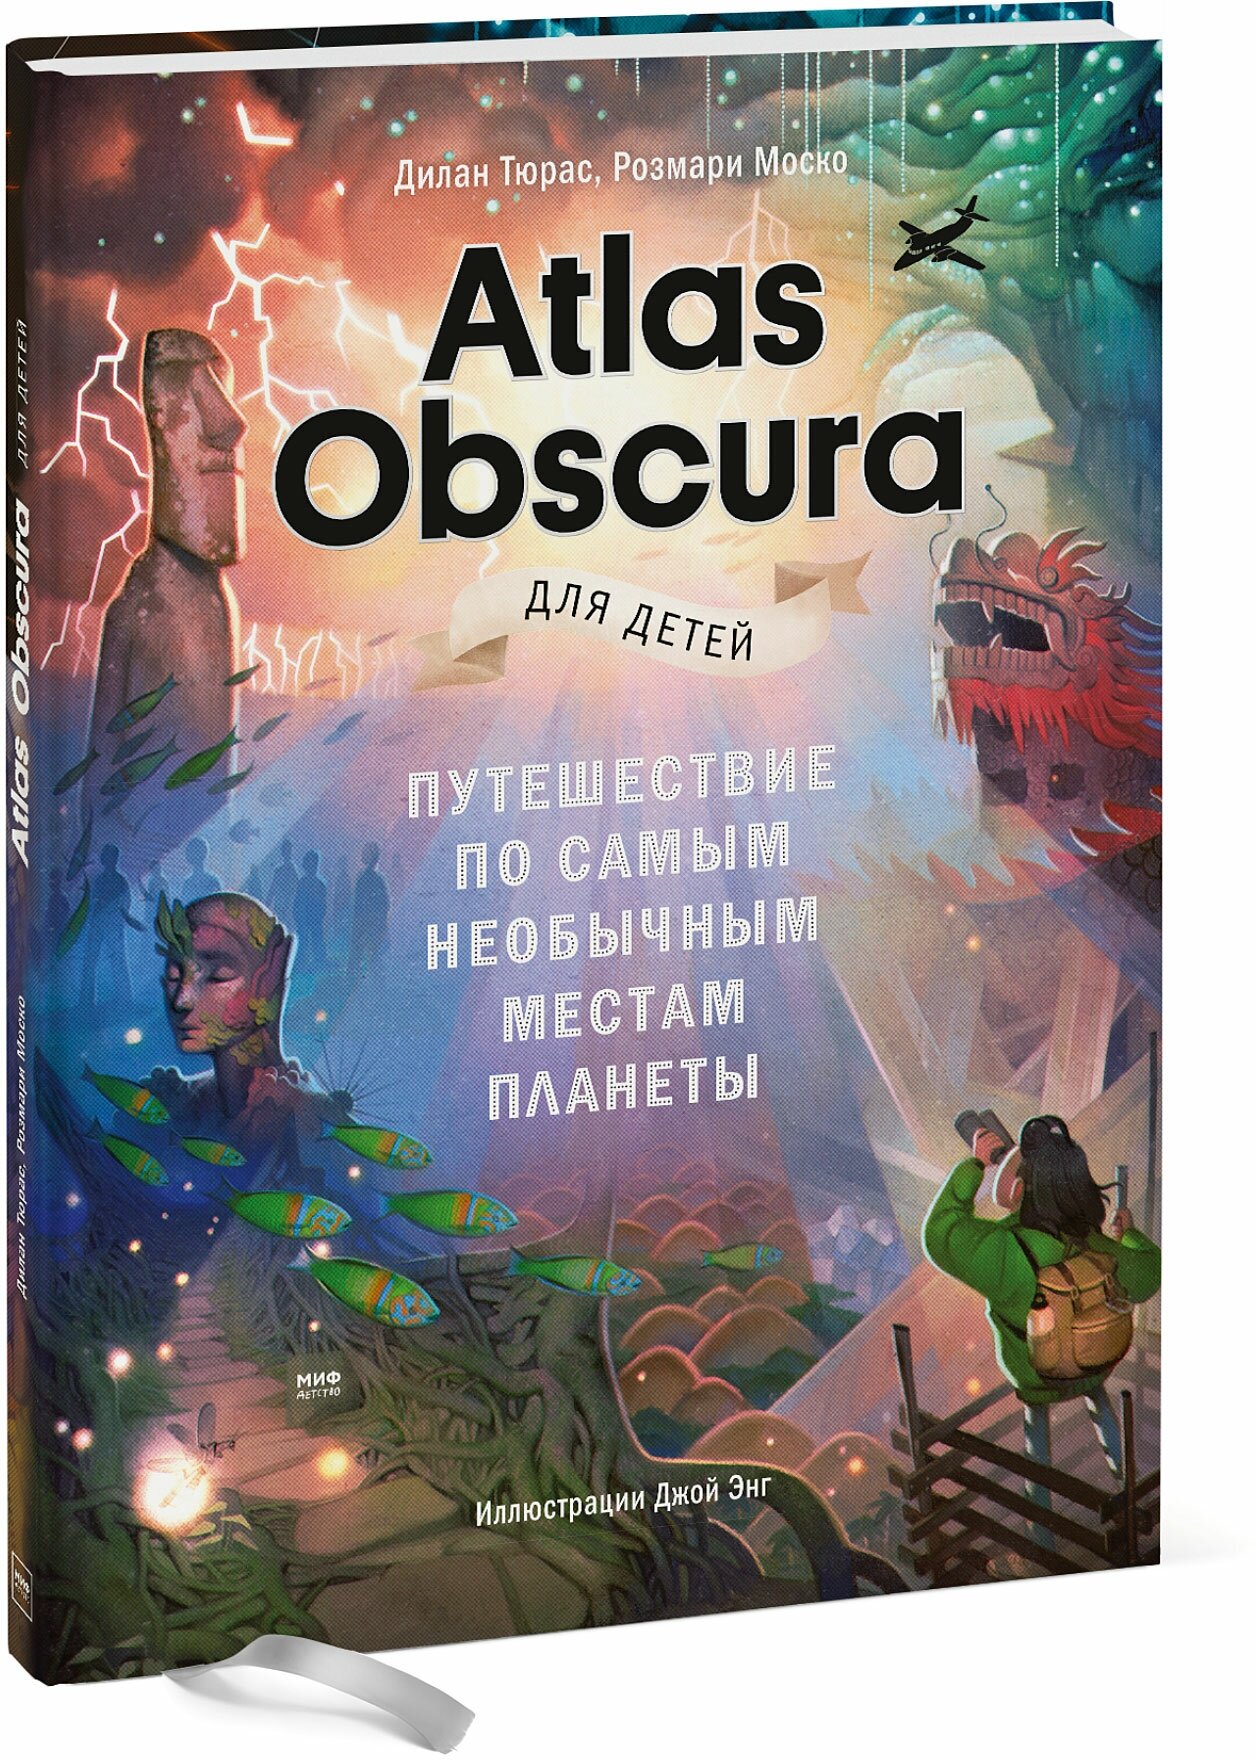 Дилан Тюрас, Розмари Моско, иллюстратор Джой Энг. Atlas Obscura для детей. Путешествие по самым необычным местам планеты